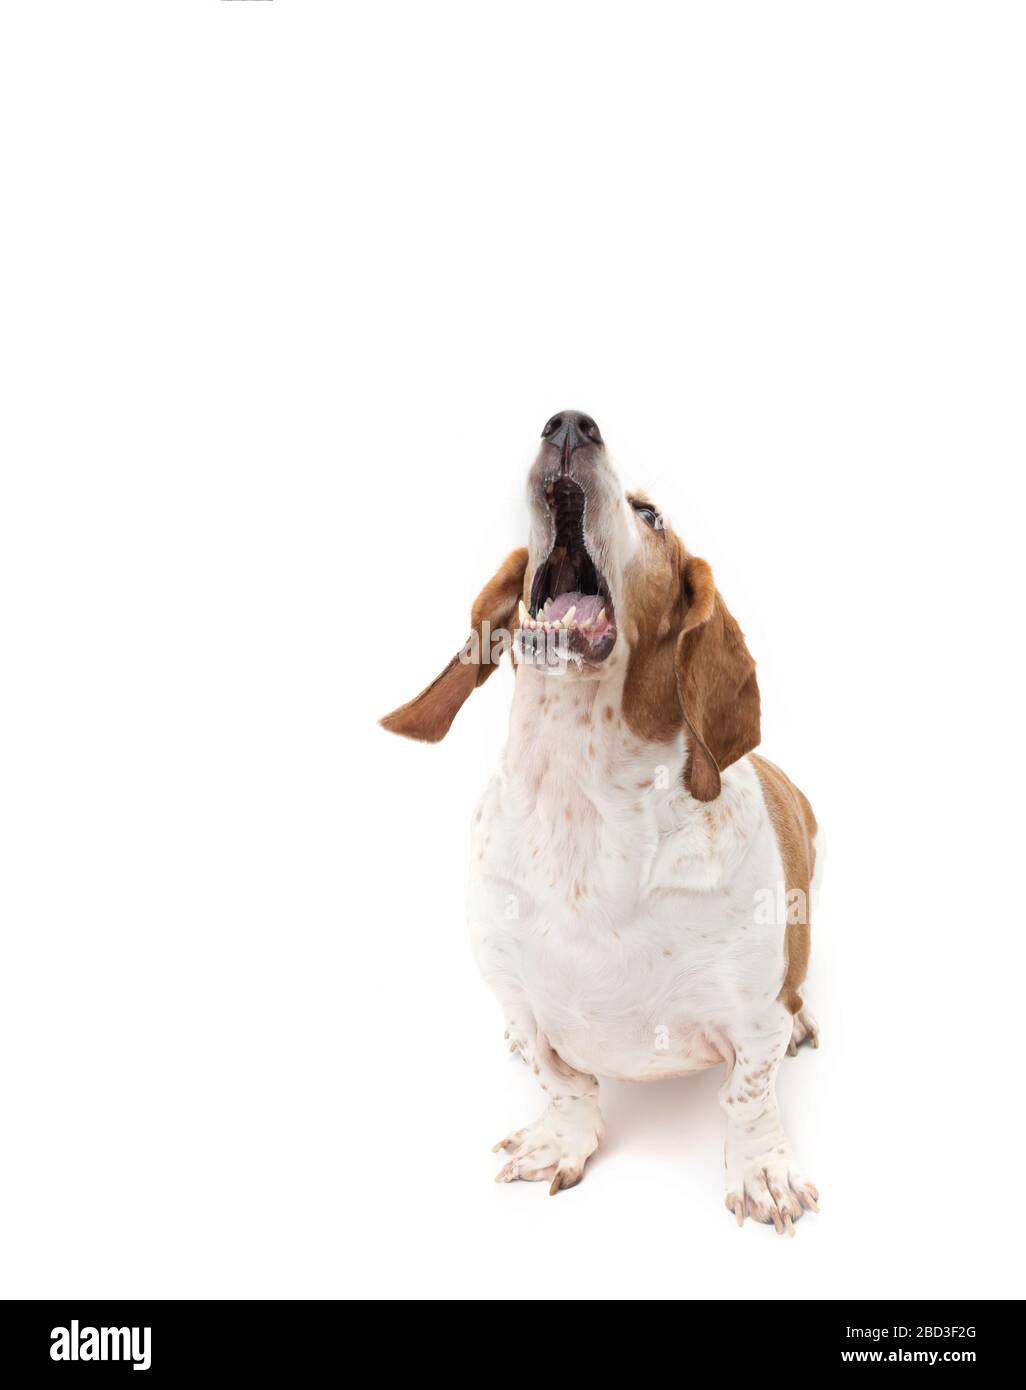 Rot-weißer Bassetthund schaut nach oben, Mund offen, hellweißer Rücken Stockfoto